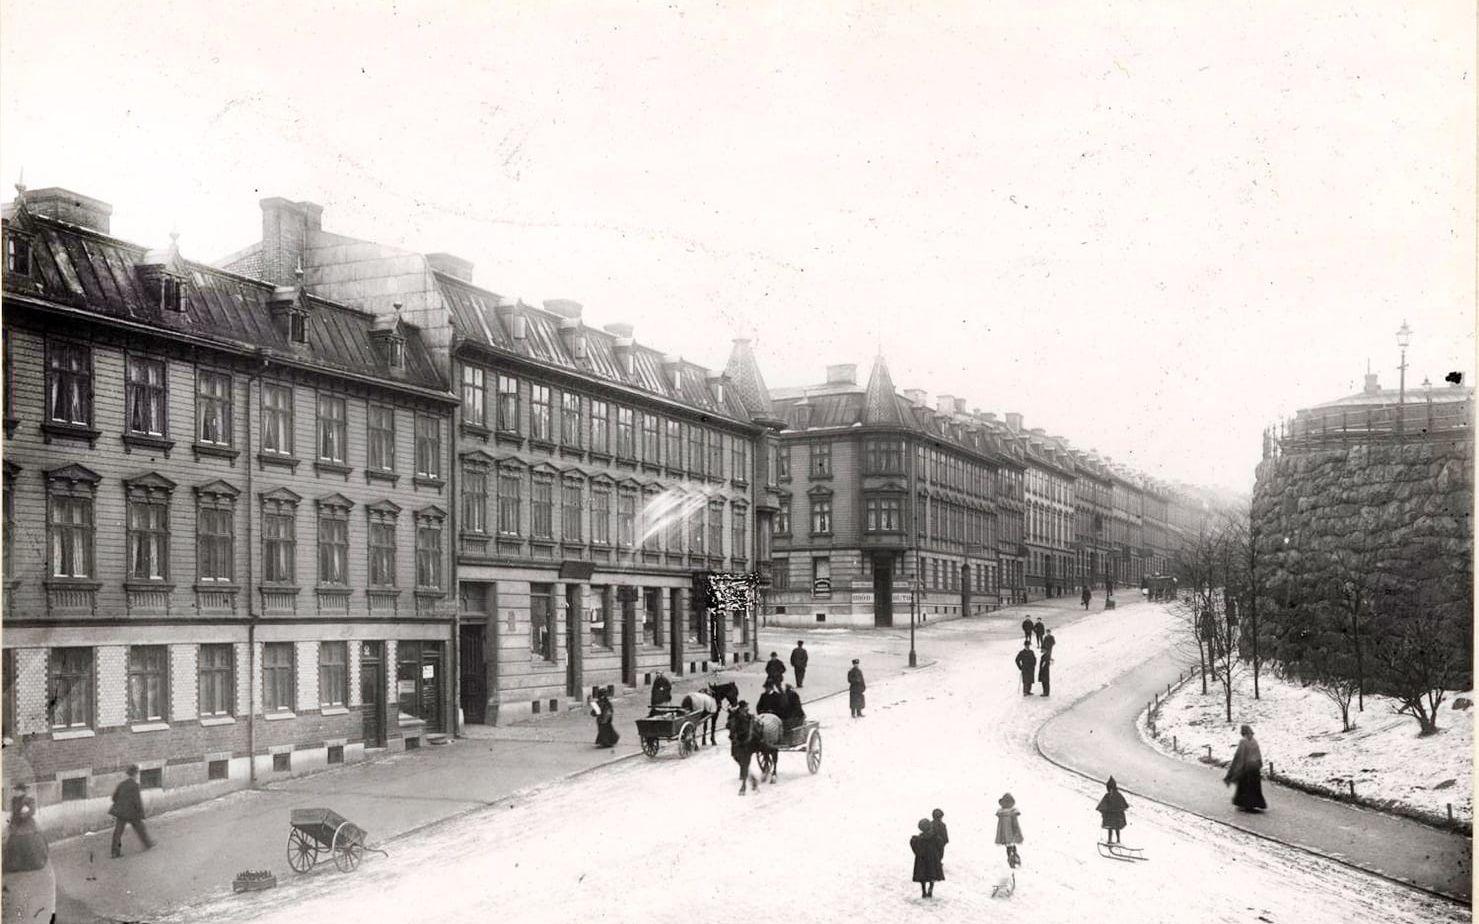 Full aktivitet på Vegagatan en vinterdag runt 1910-1915. Både hästar, promenerande och kälkåkande barn samsas på vägen.